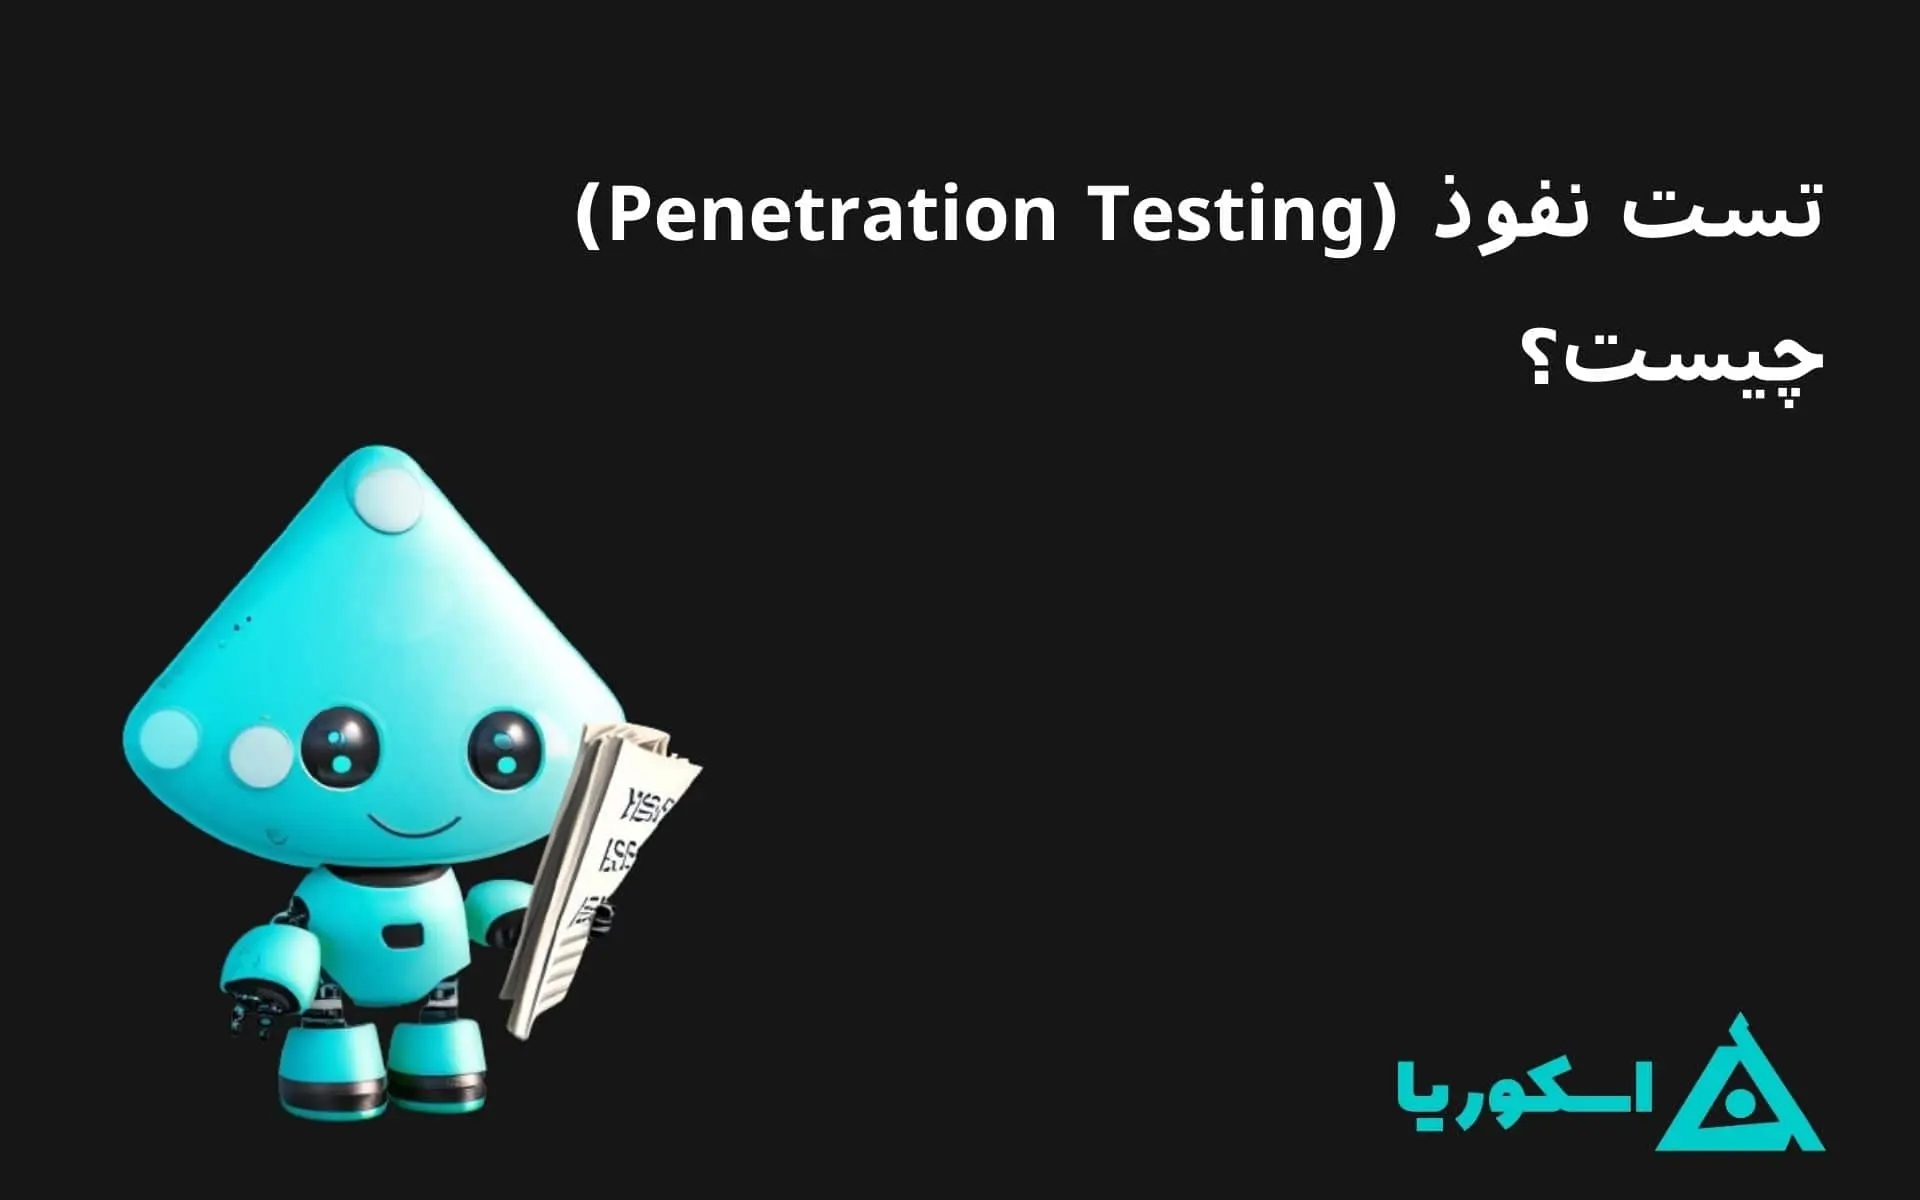 تصویر شاخص مقاله تیم قرمز (Penetration Testing) چیست؟